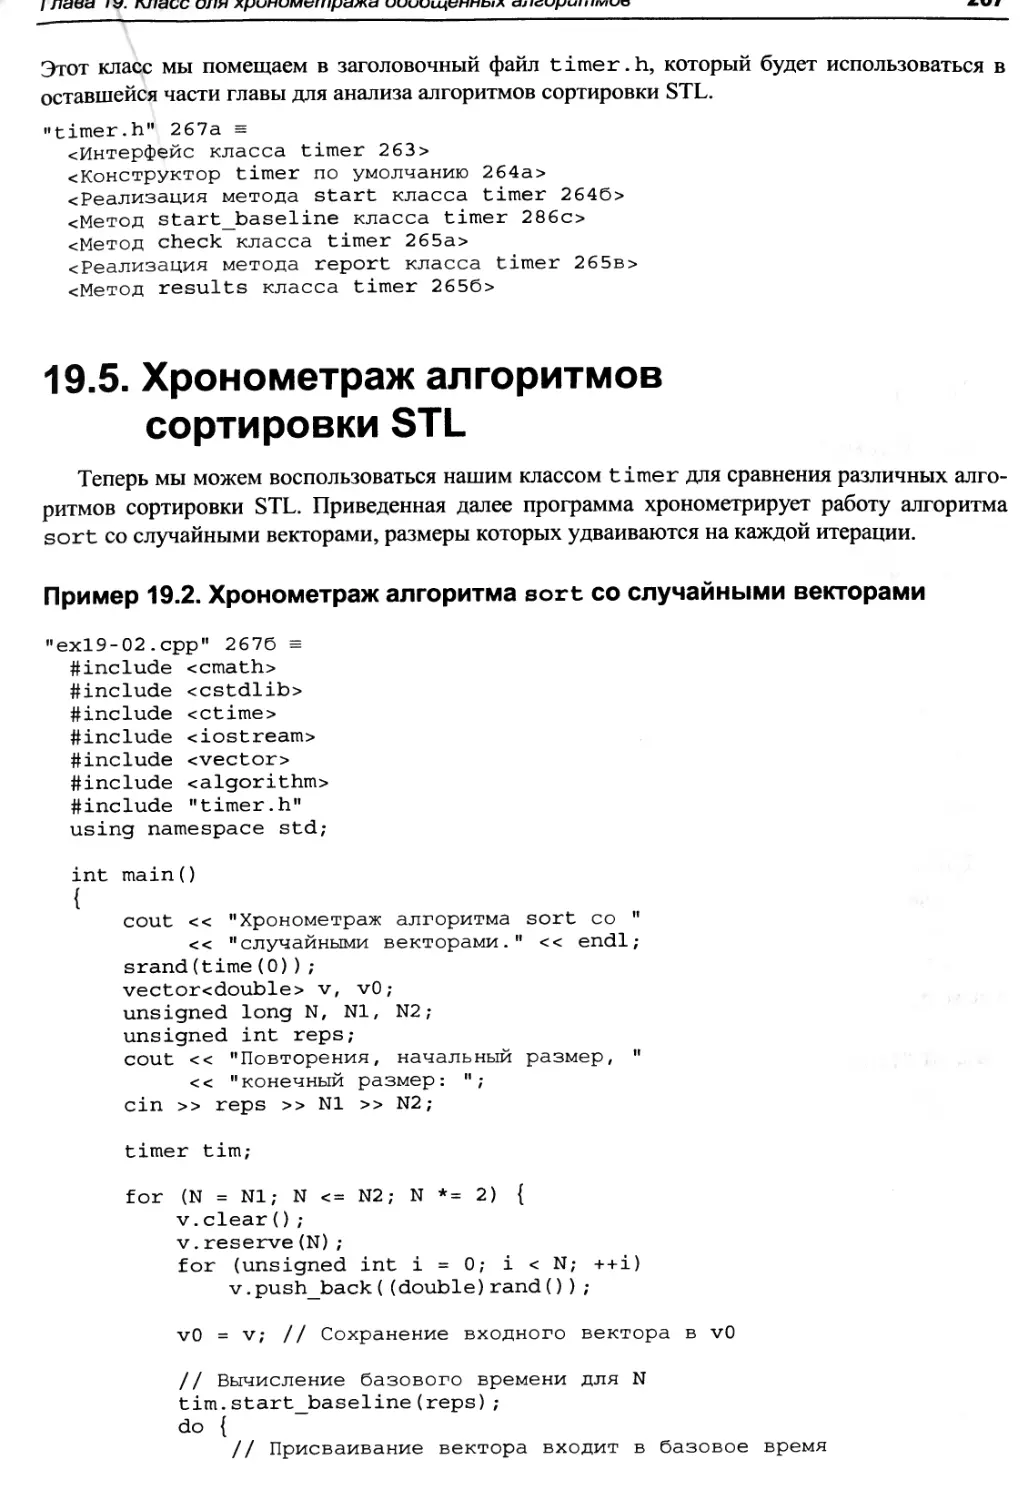 Пример 19.2. Хронометраж алгоритма sort со случайными векторами
19.5. Хронометраж алгоритмов сортировки STL